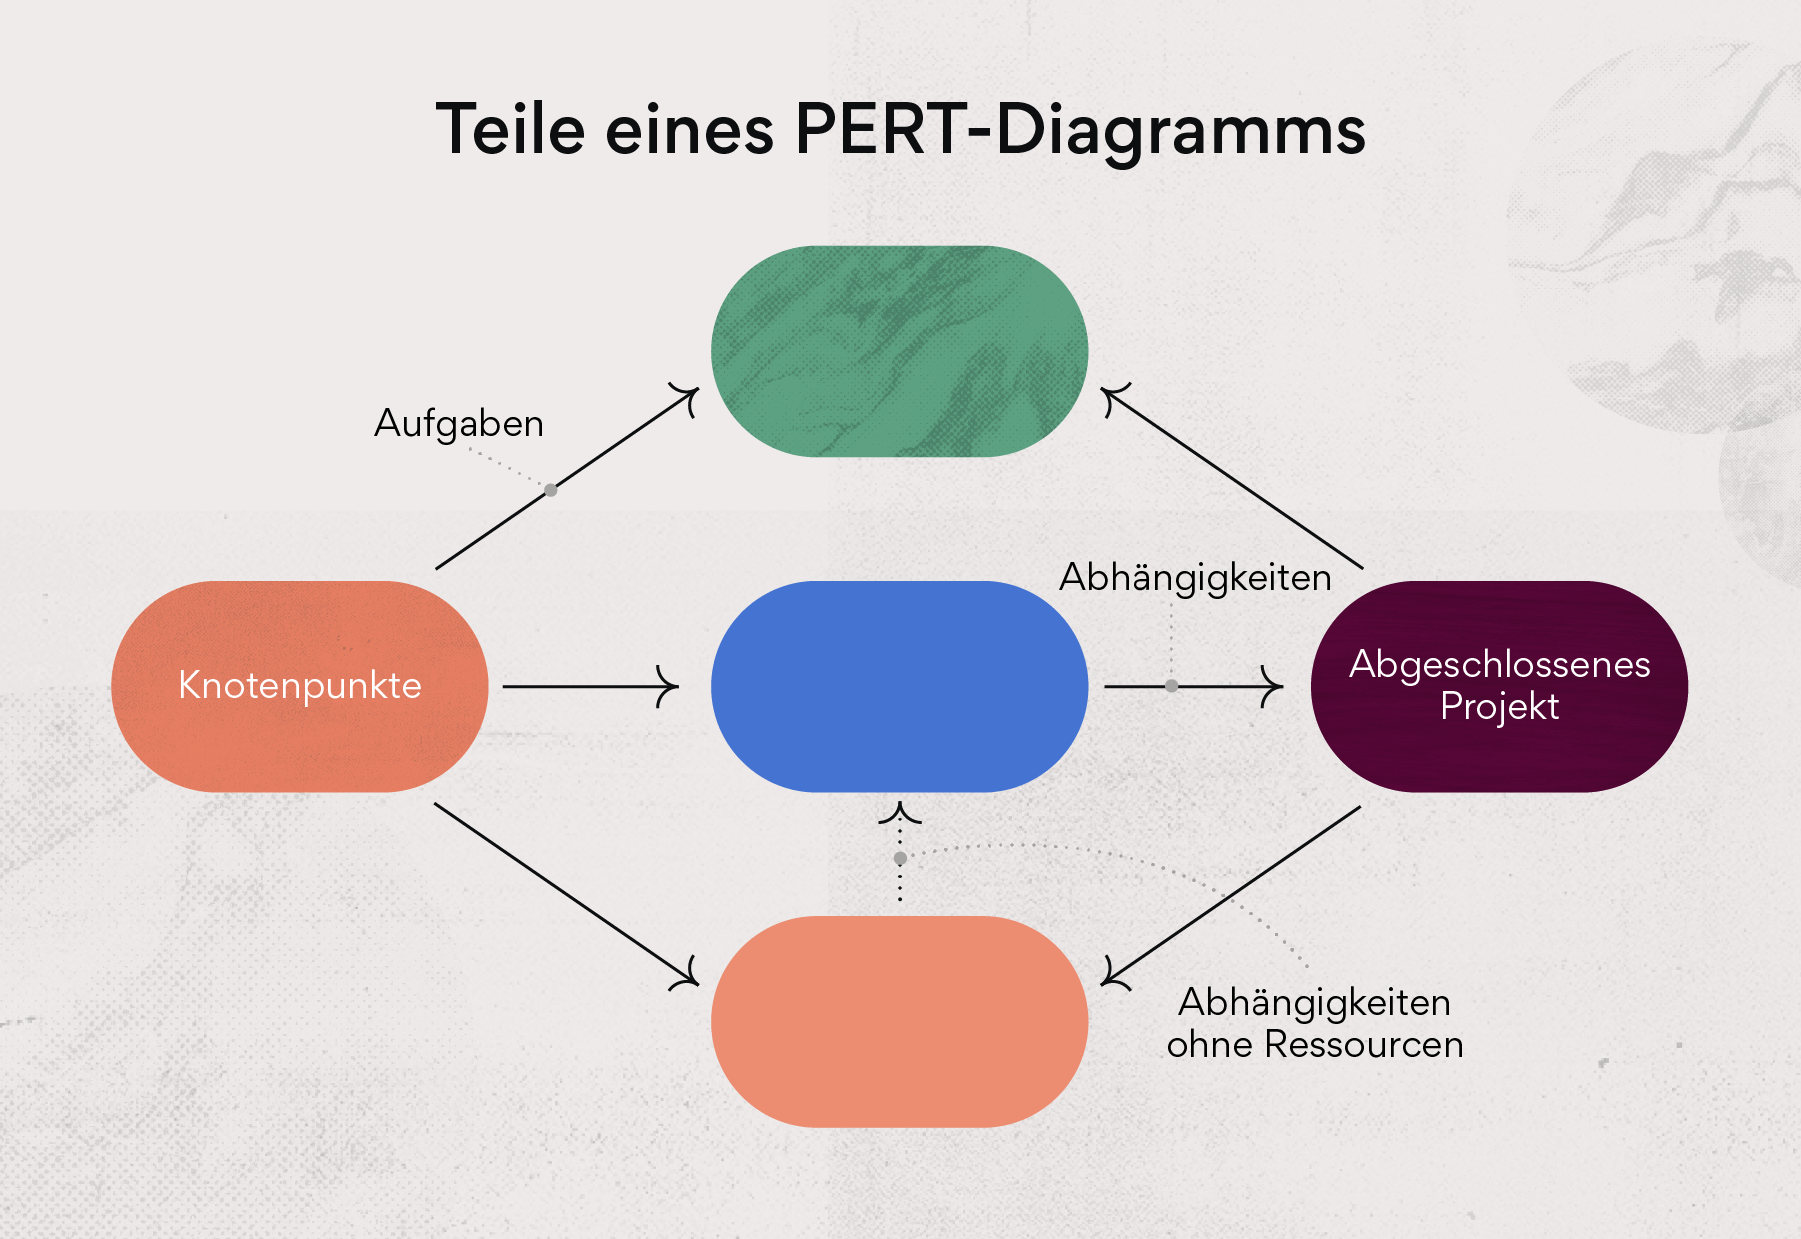 Teile eines PERT-Diagramms